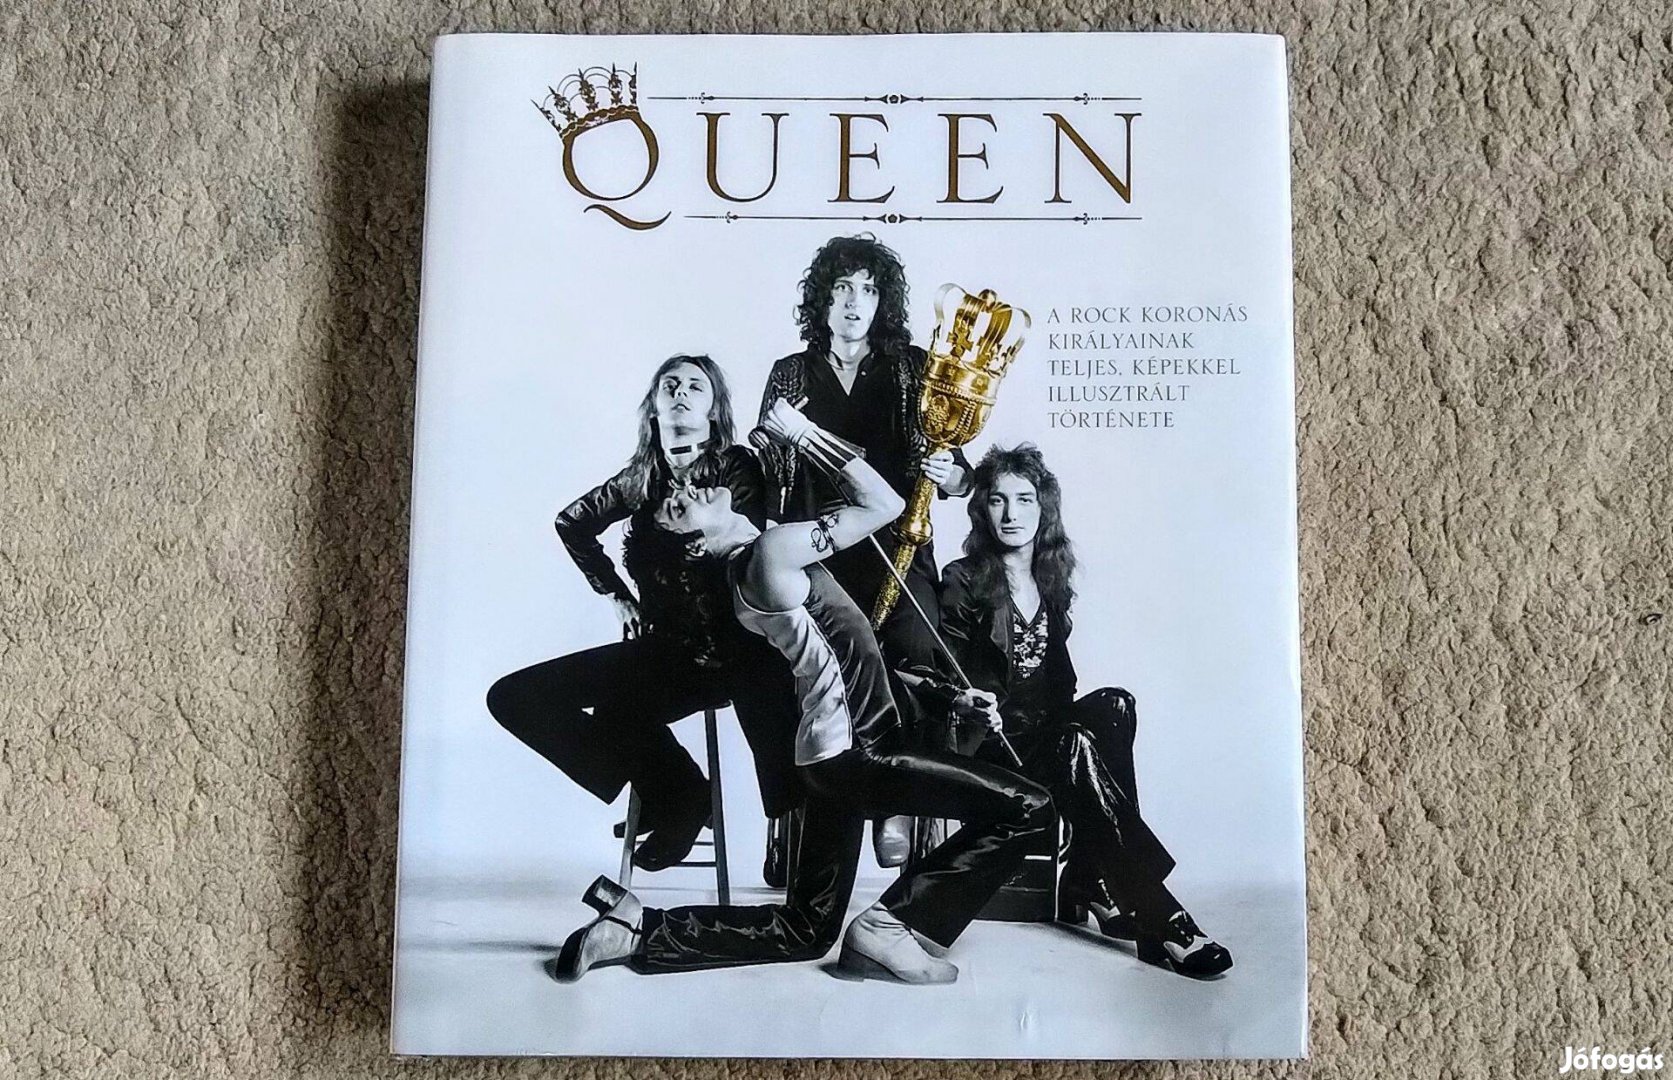 Queen - Phil Sutcliffe - A rock koronás királyainak teljes, képekked